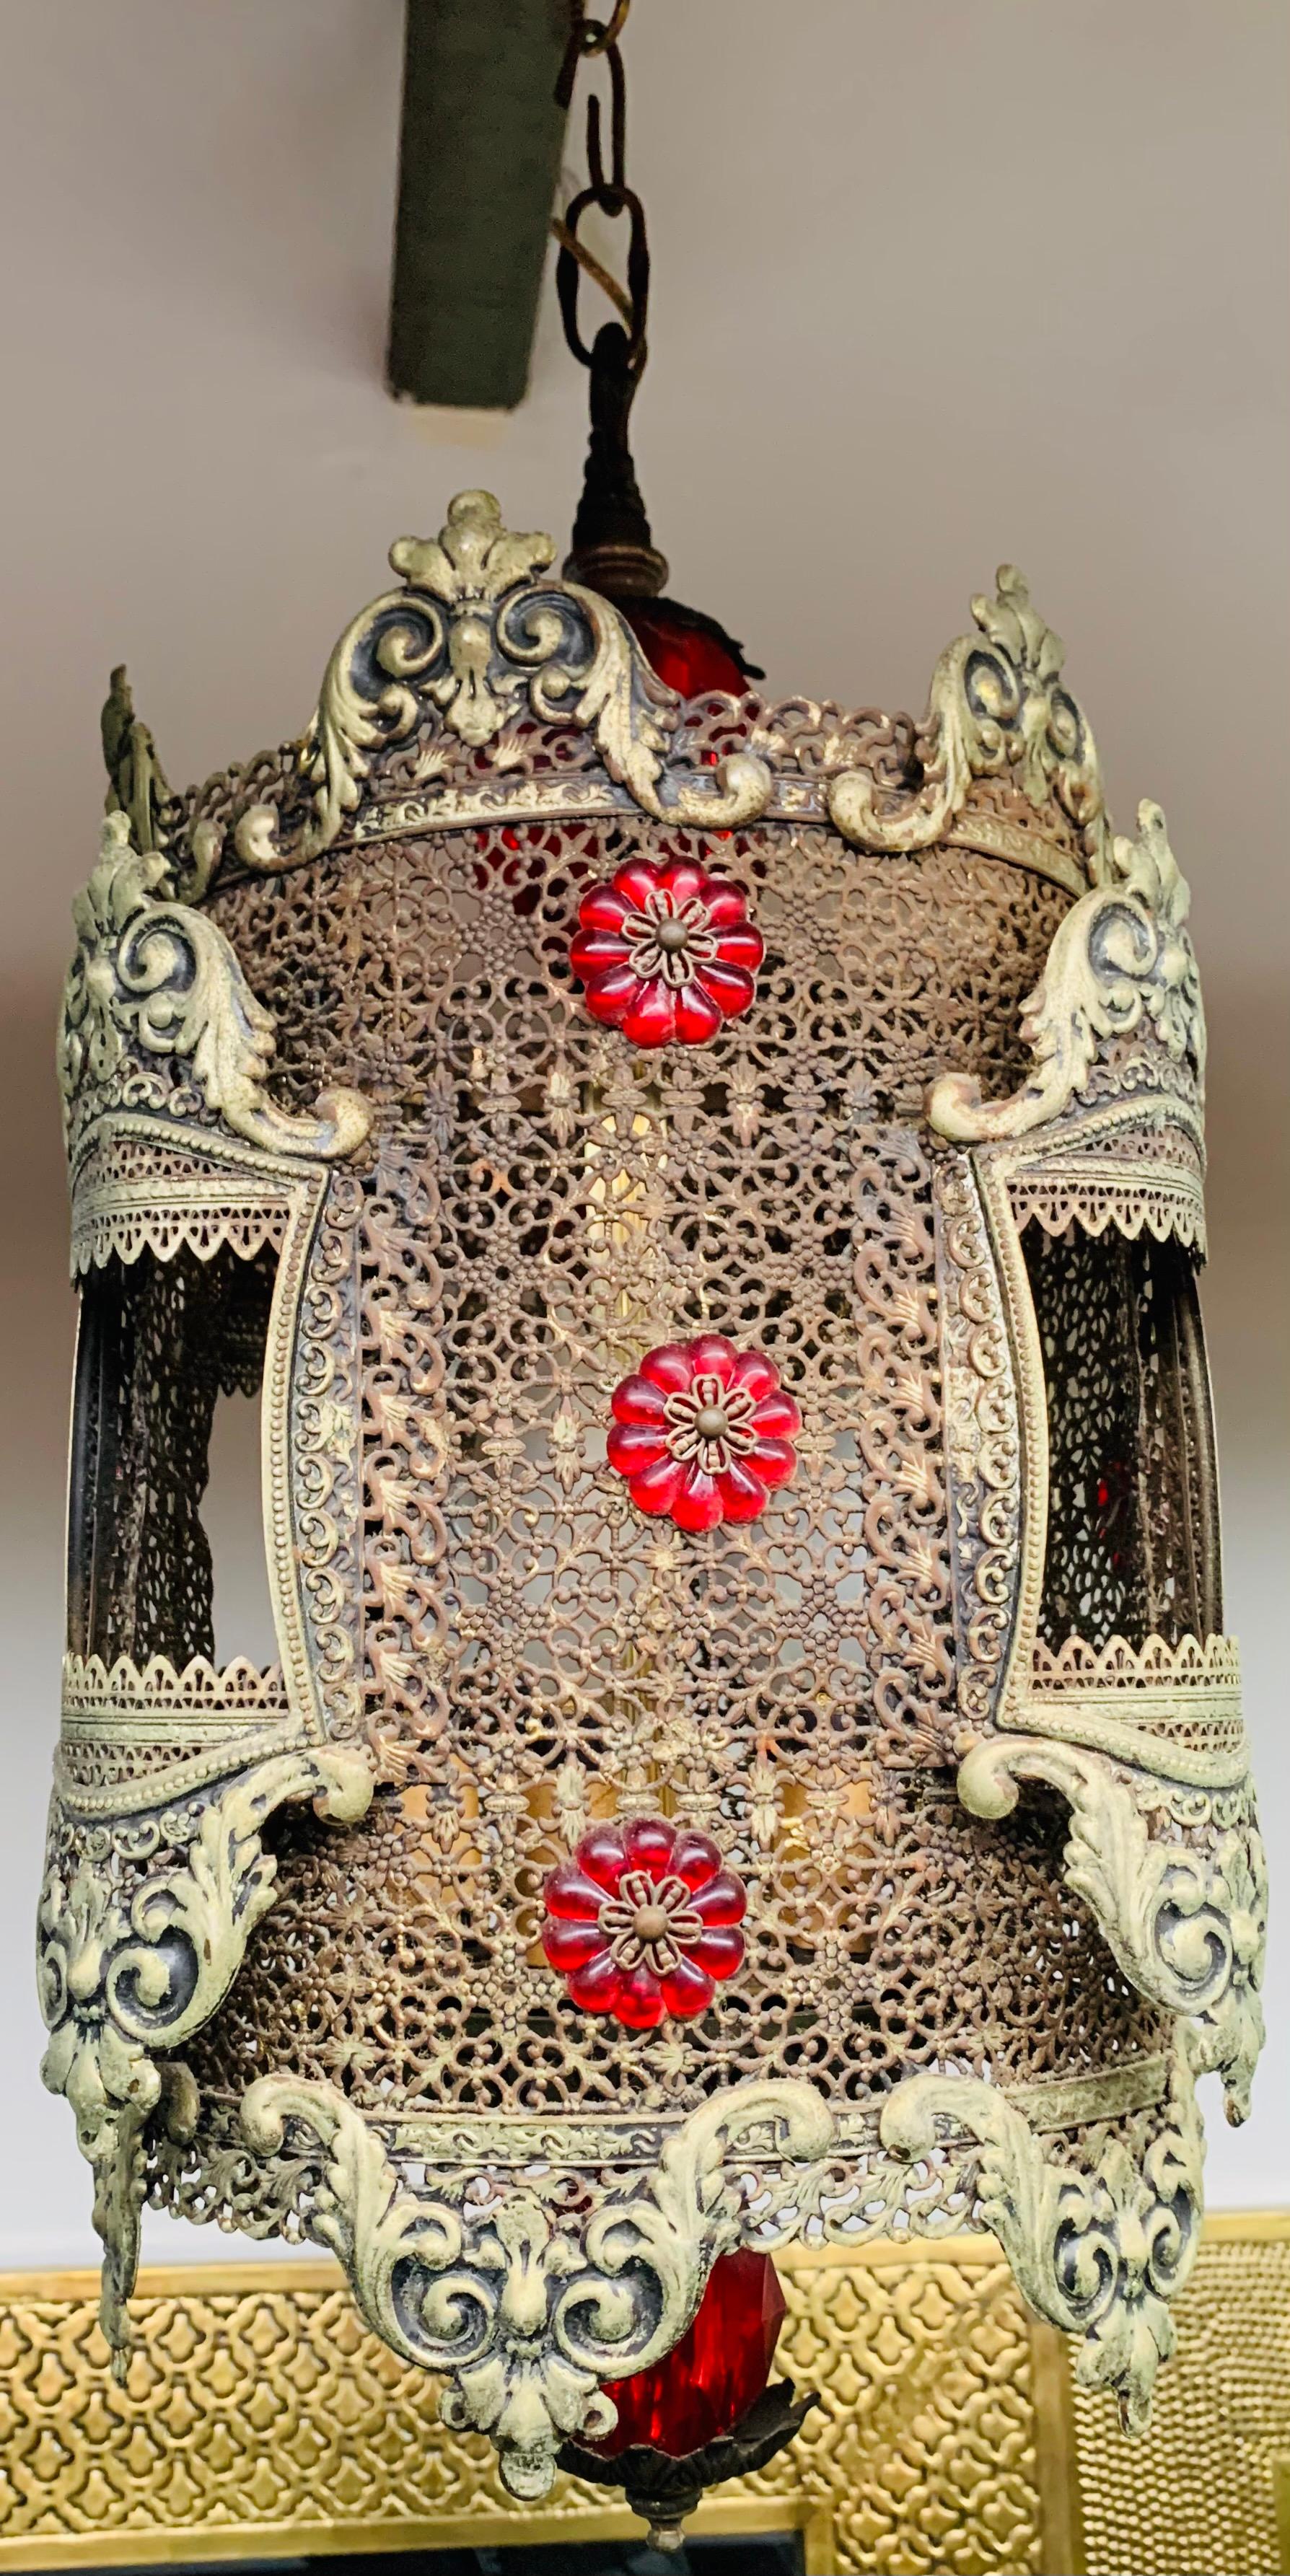 Lanterne ou pendentif décoratif en métal doré de style oriental des années 1970. Cette lanterne de forme cylindrique est ornée de faux cristaux rouges décoratifs et d'un fin motif filigrane. Cette lanterne ajoutera une touche exotique à tout espace.